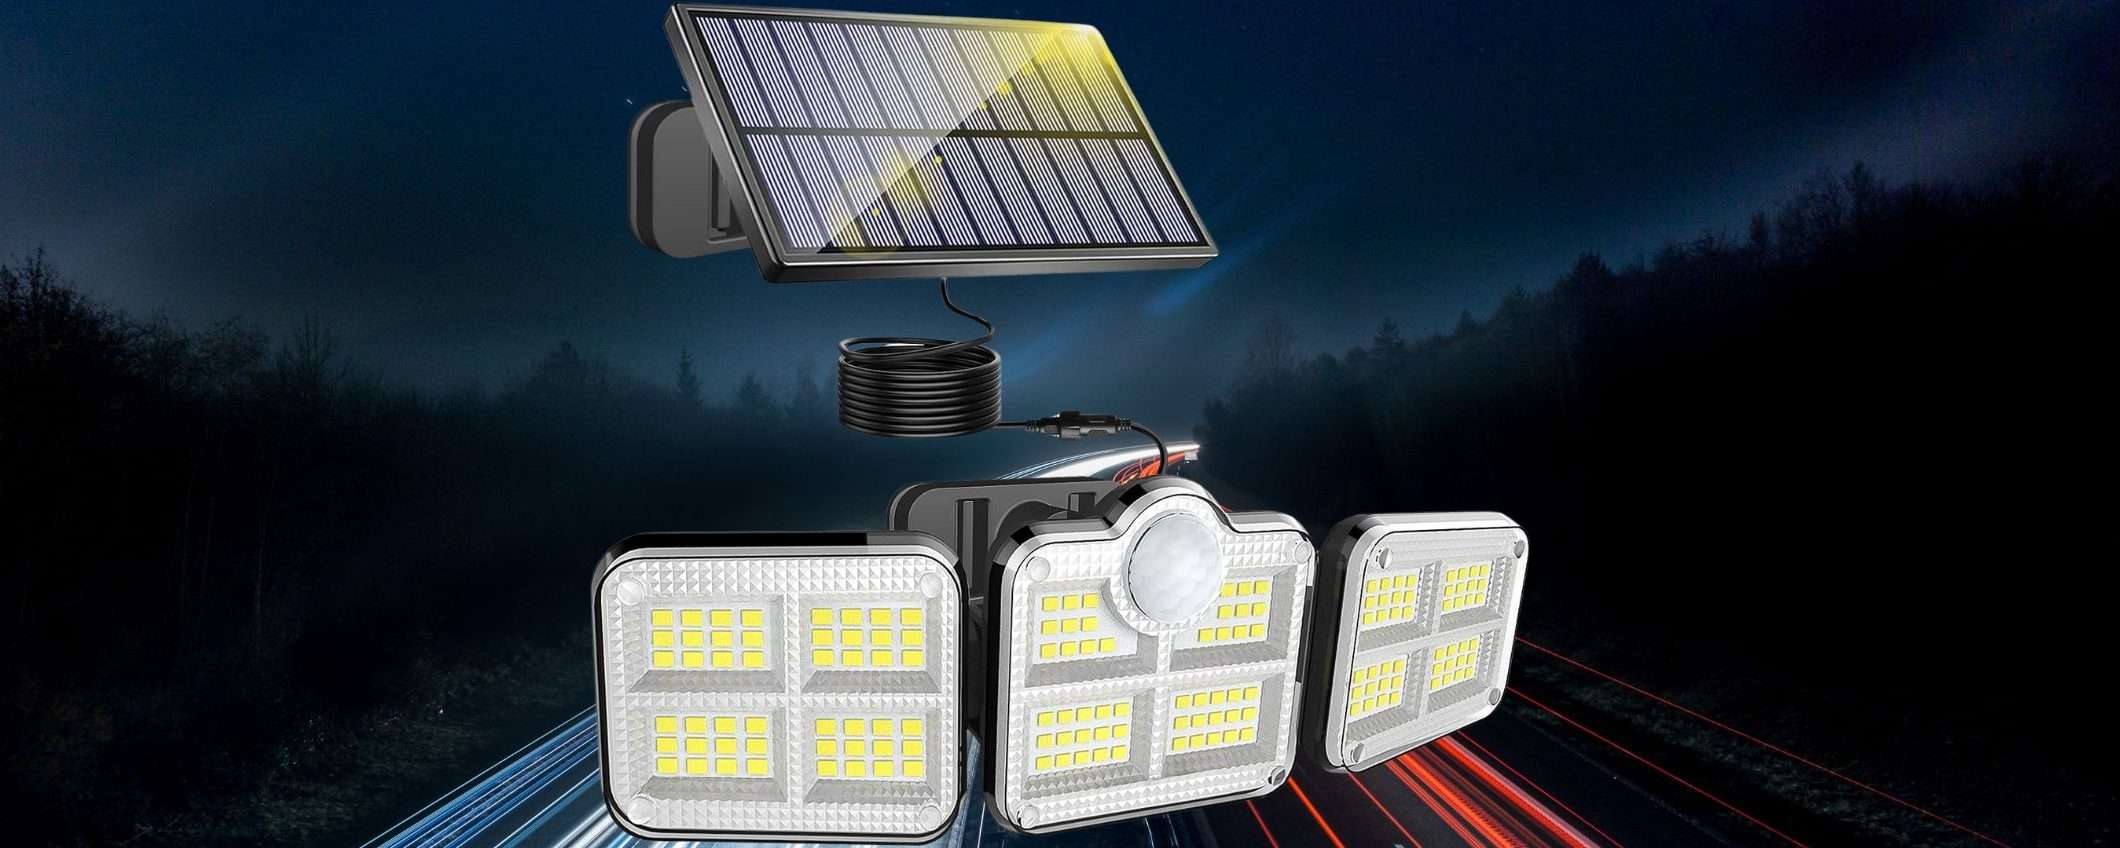 Una BESTIA di faro solare a 11€: 3 teste luminose (Amazon)